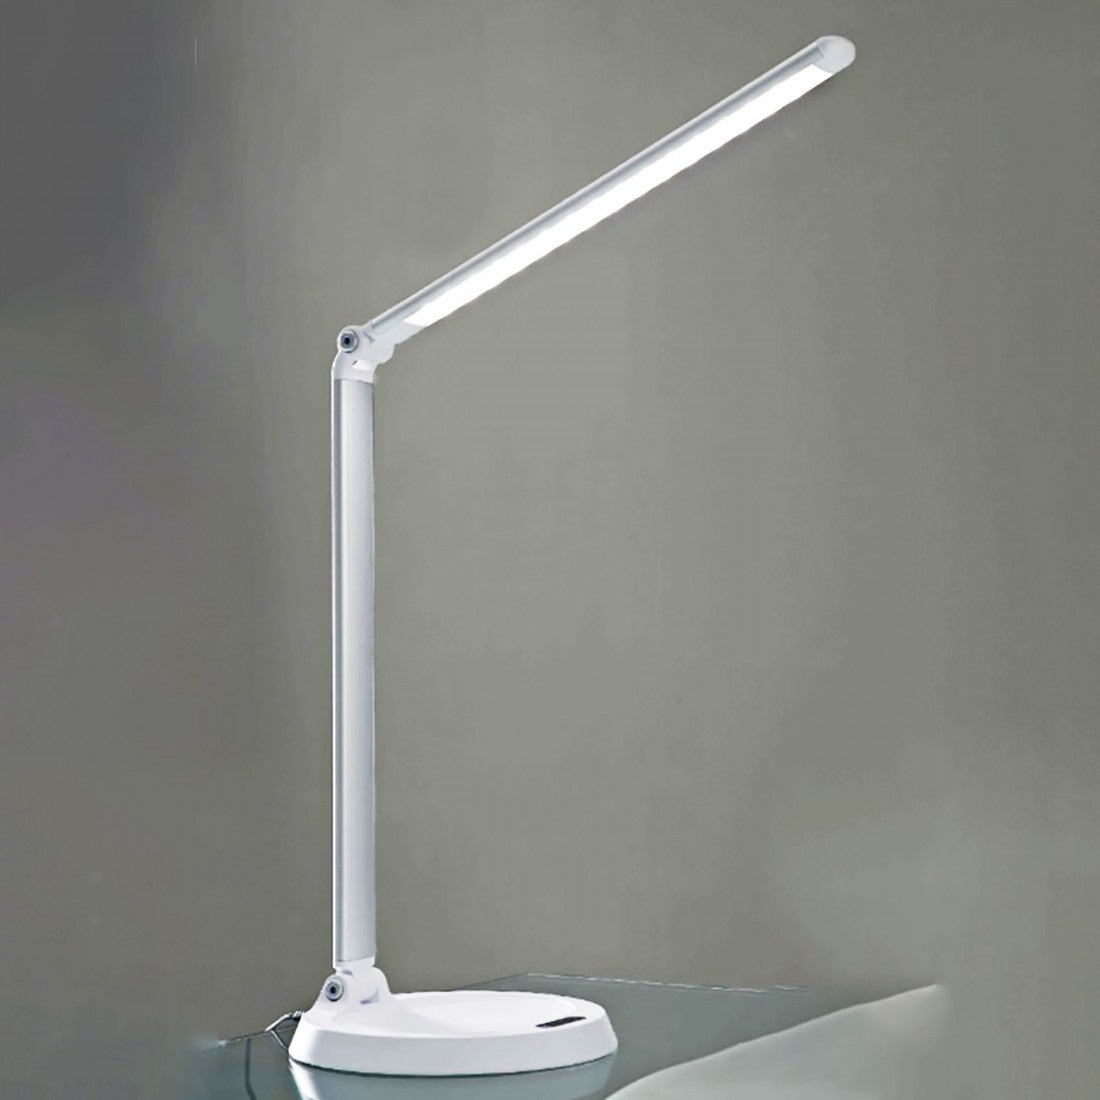 Abat-jour illuminando delta 6w led 440lm 3000°k abs dimmerabile lampada tavolo scrivania ip20, colore bianco+alluminio